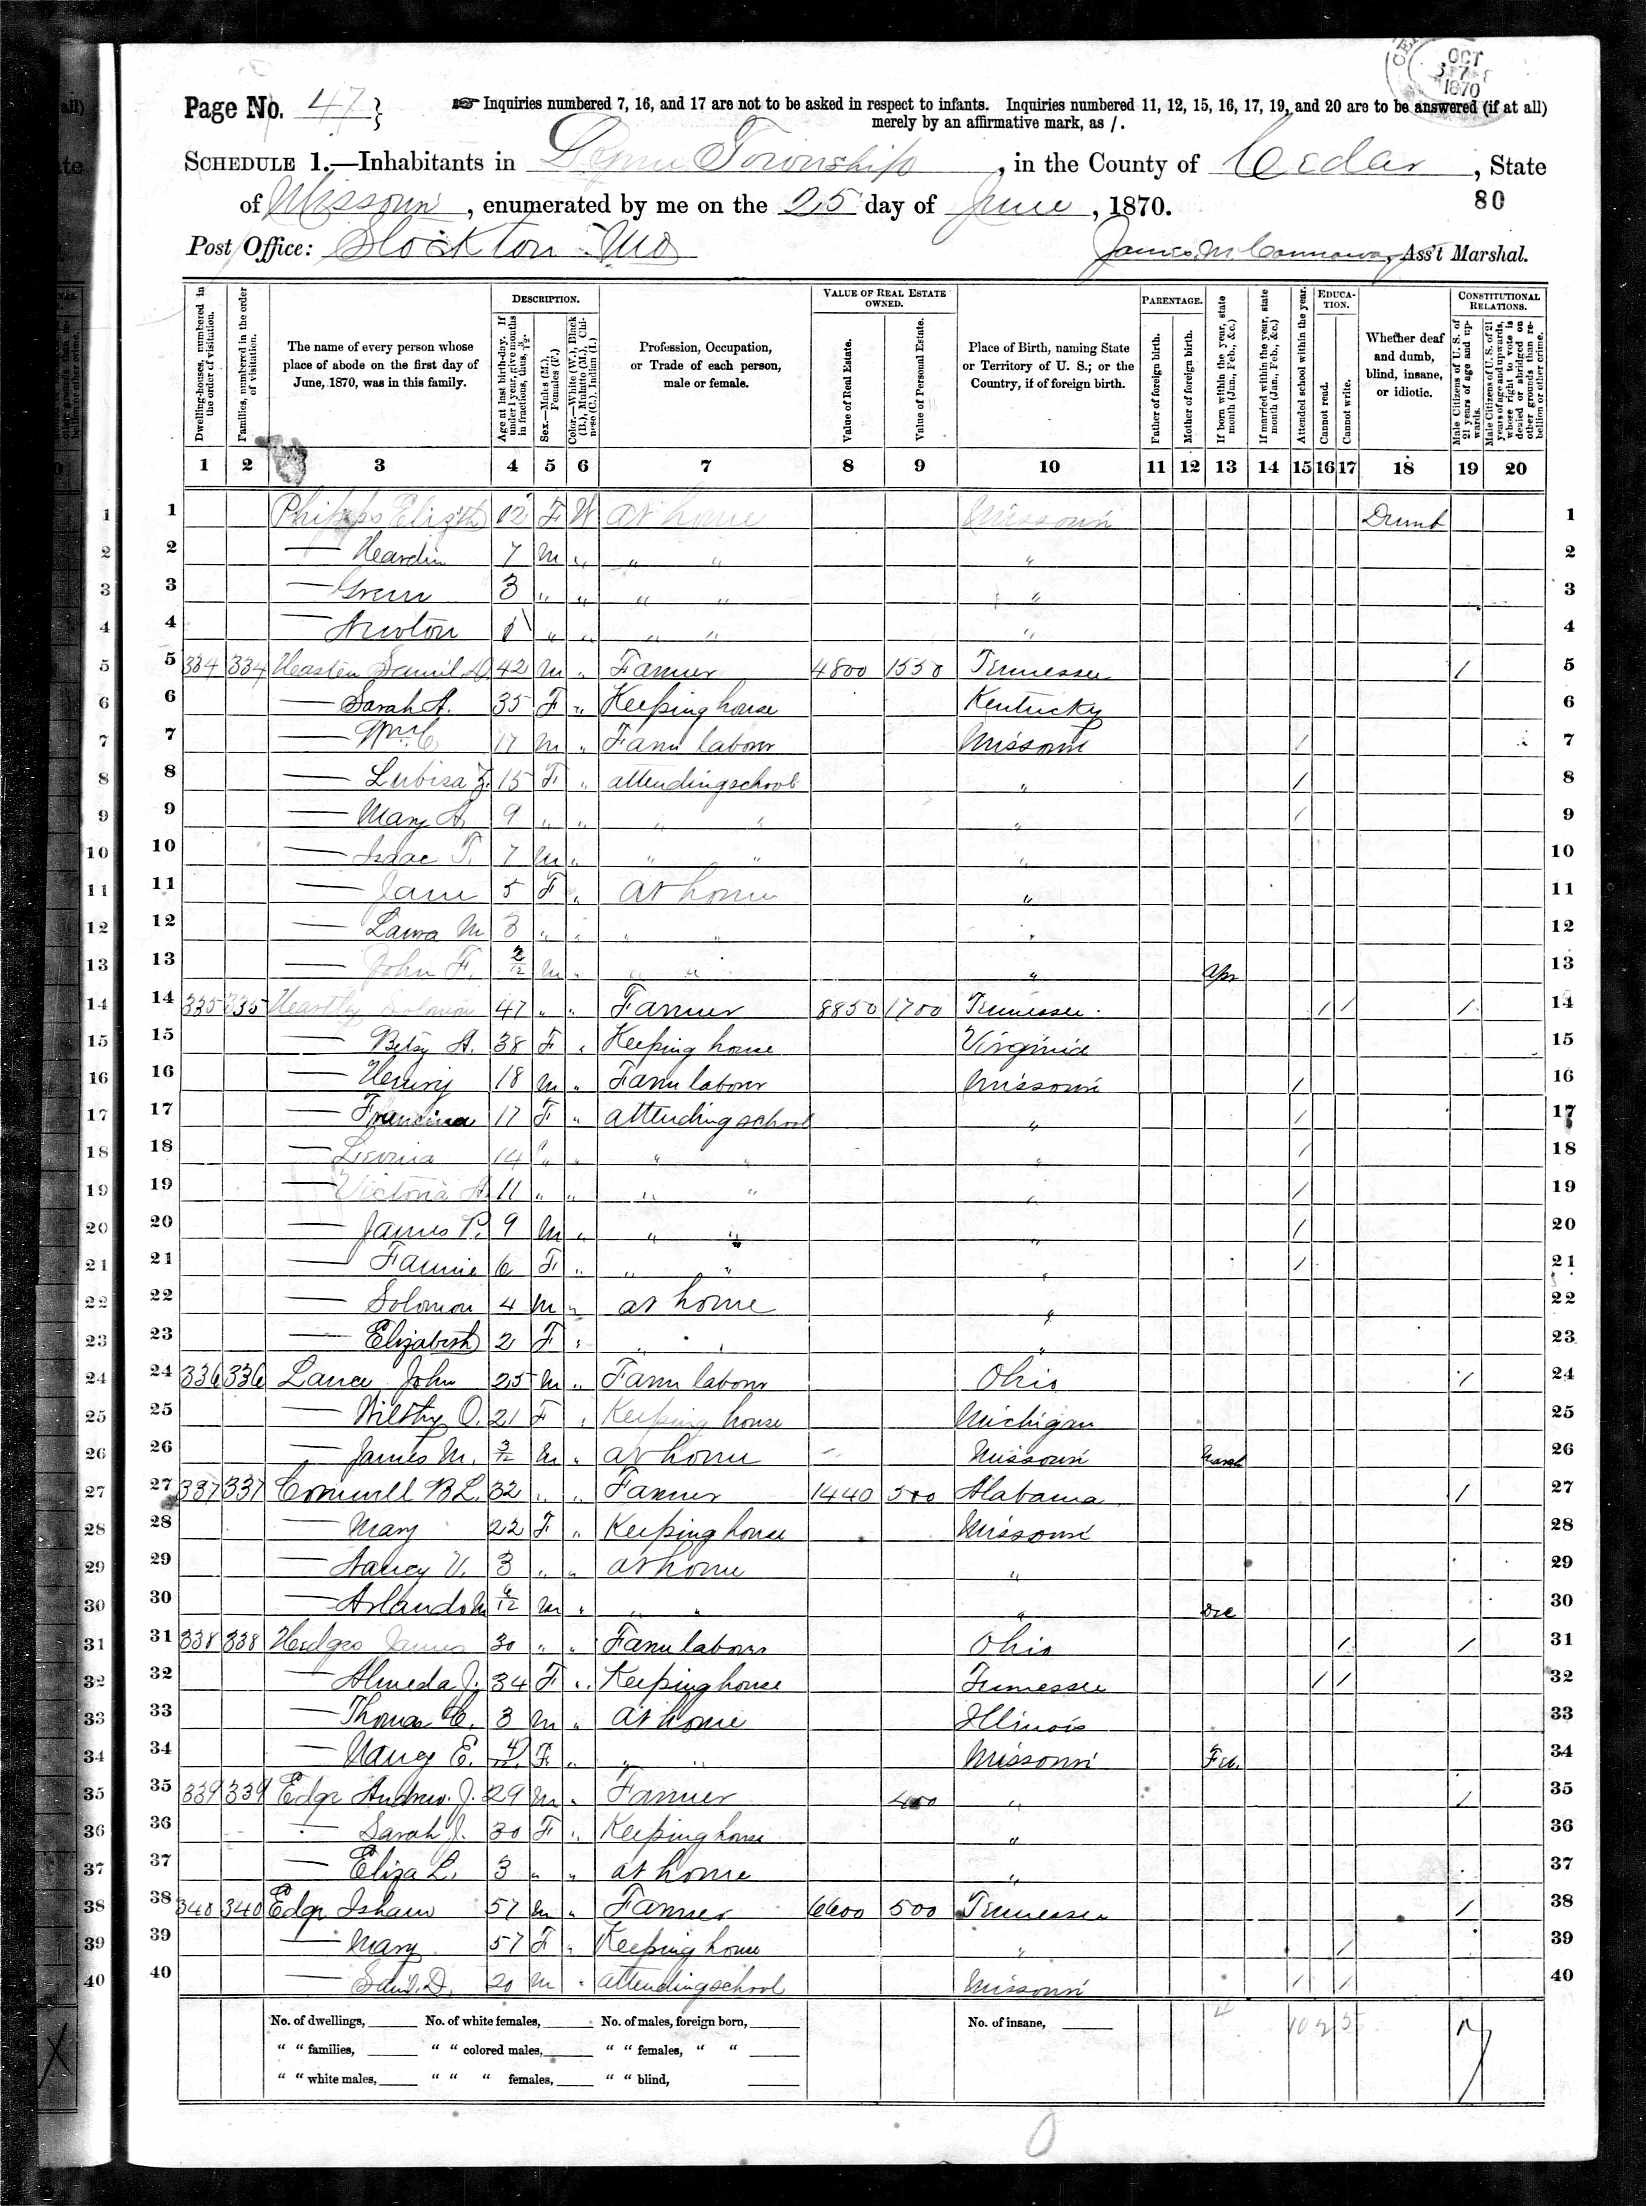 Solomon Hartley, 1870 Cedar County, Missouri, census